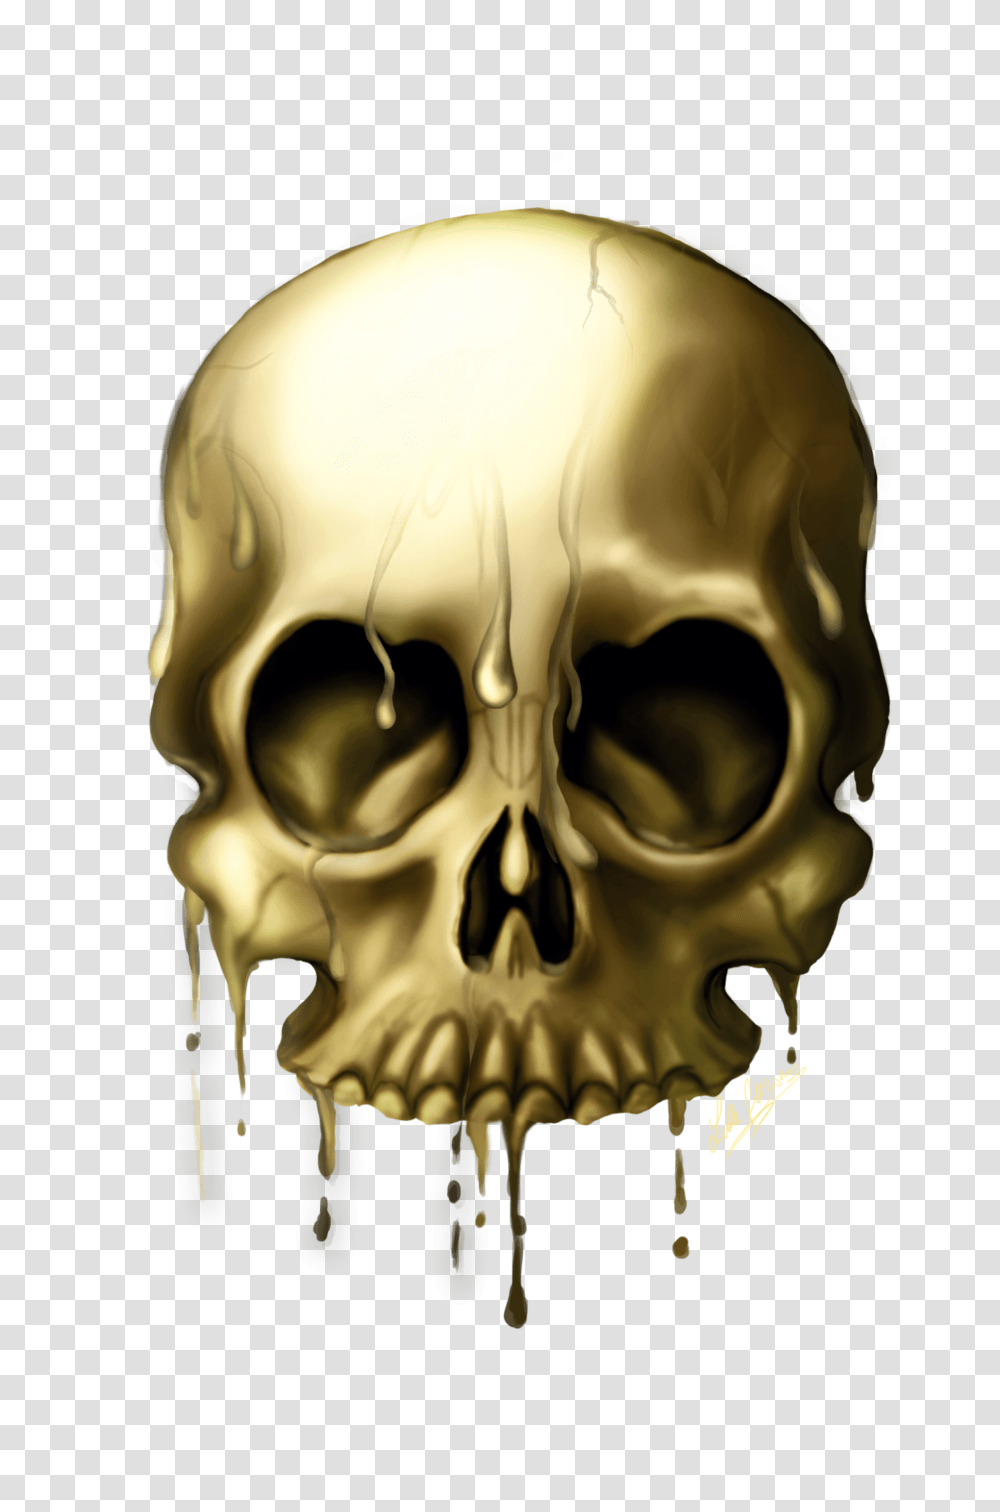 Skull, Person, Helmet, Head Transparent Png